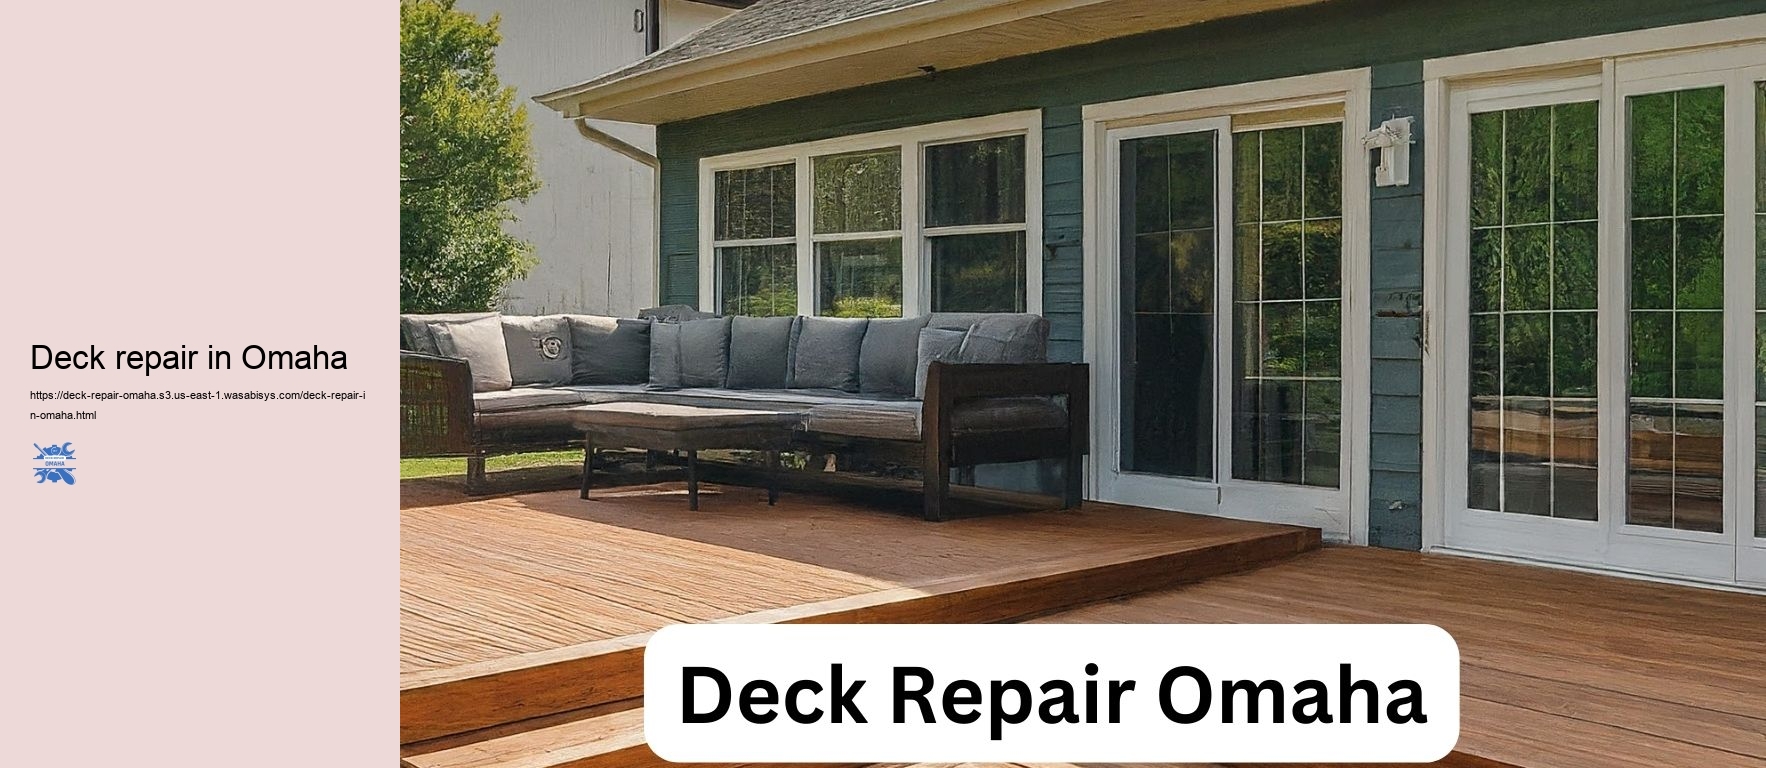 Deck repair in Omaha